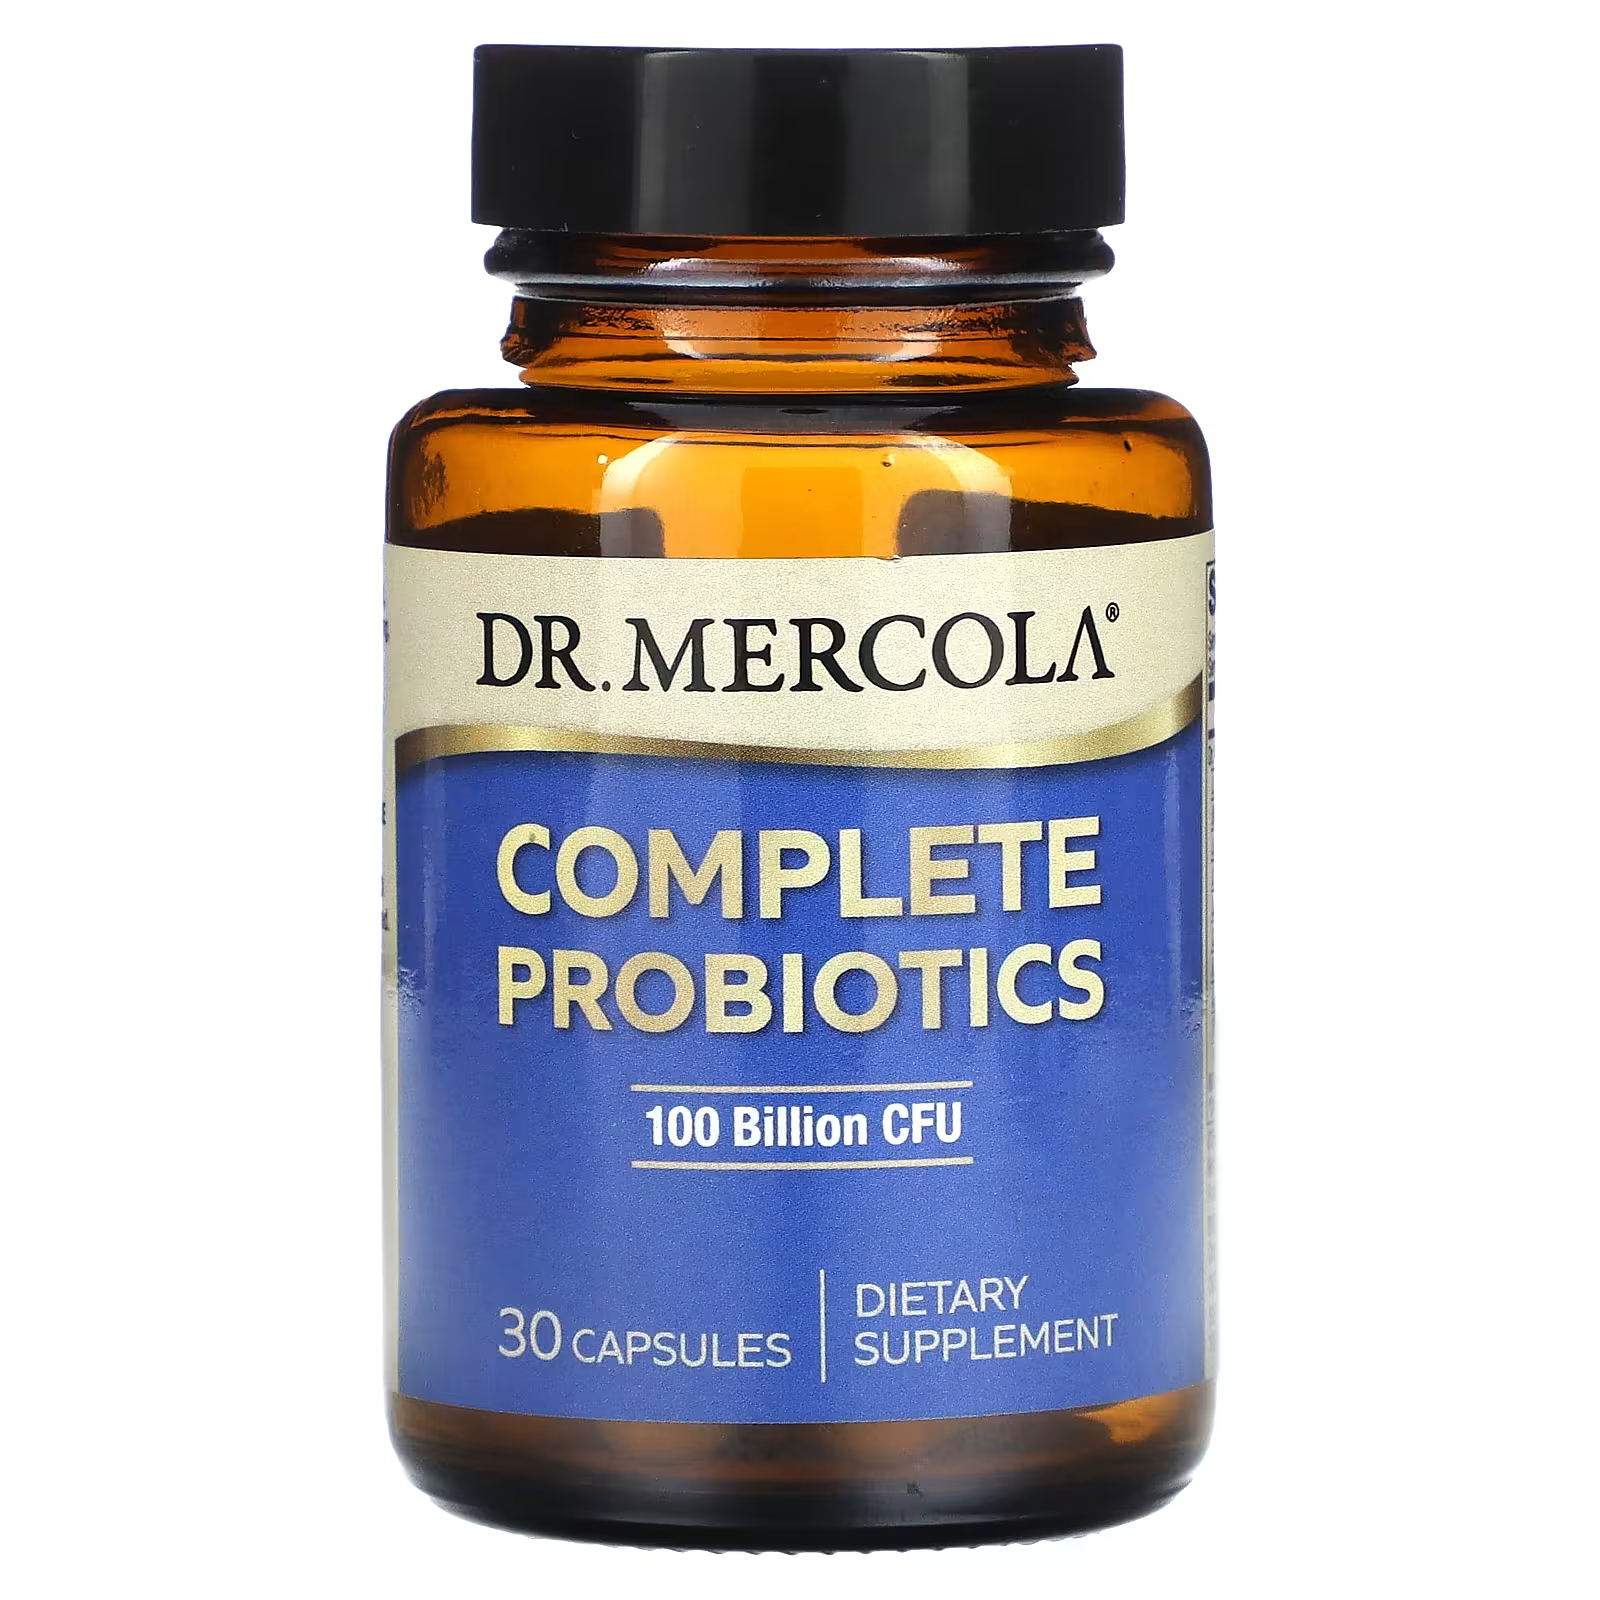 Пищевая добавка Dr. Mercola Complete Probiotics 100 миллиардов КОЕ, 30 капсул dr mercola complete spore restore 4 млрд кое 30 капсул